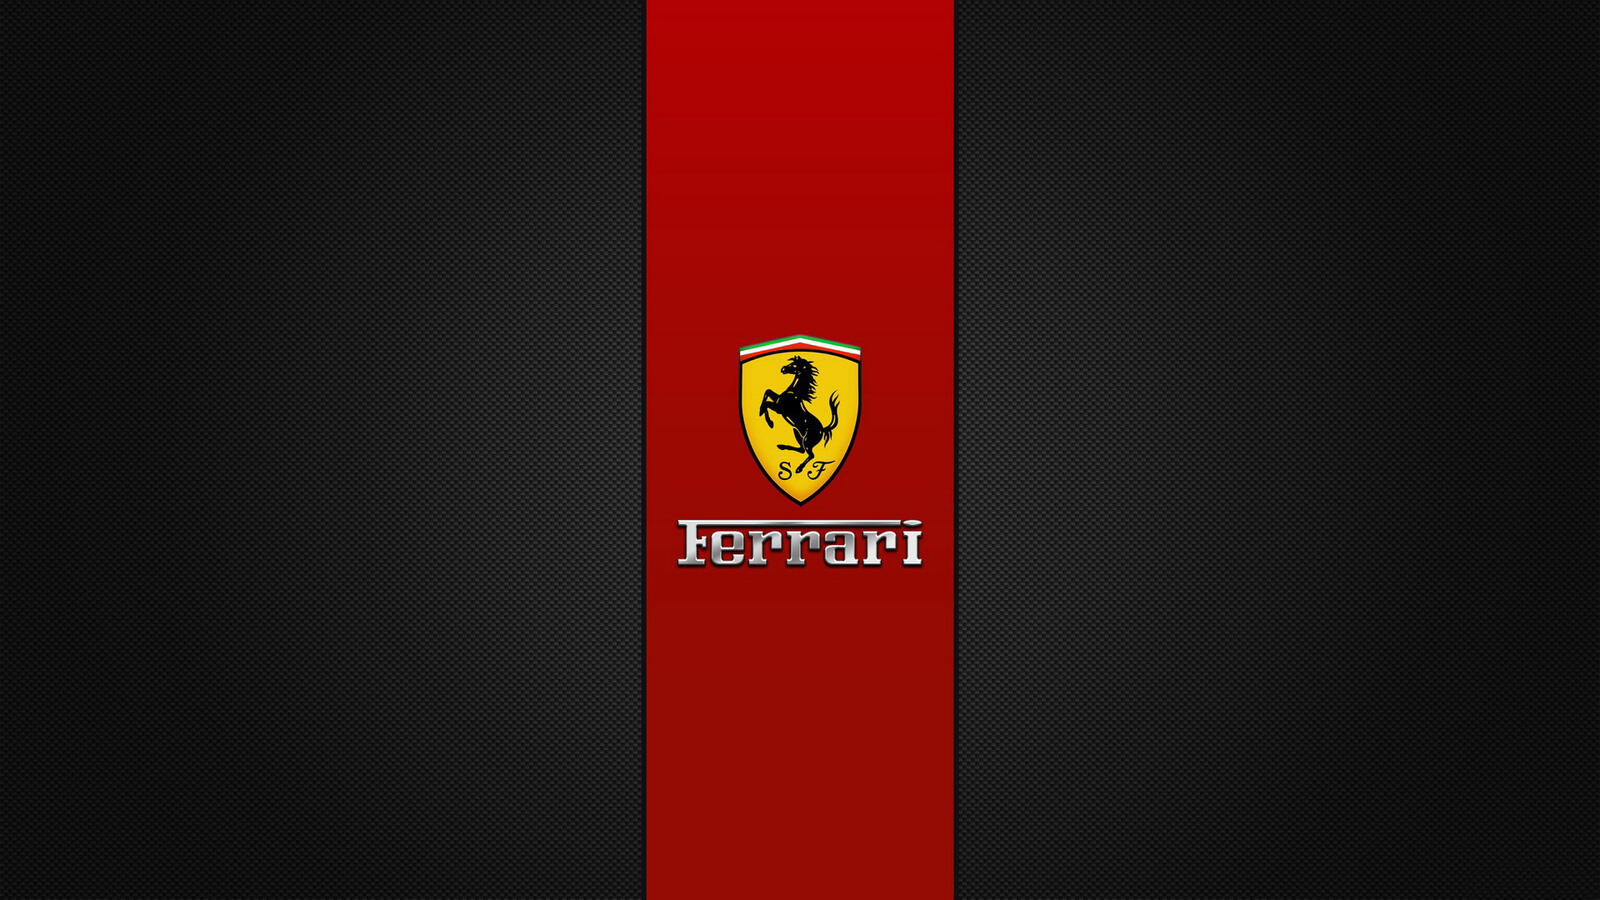 Wallpapers ferrari logo brand on the desktop